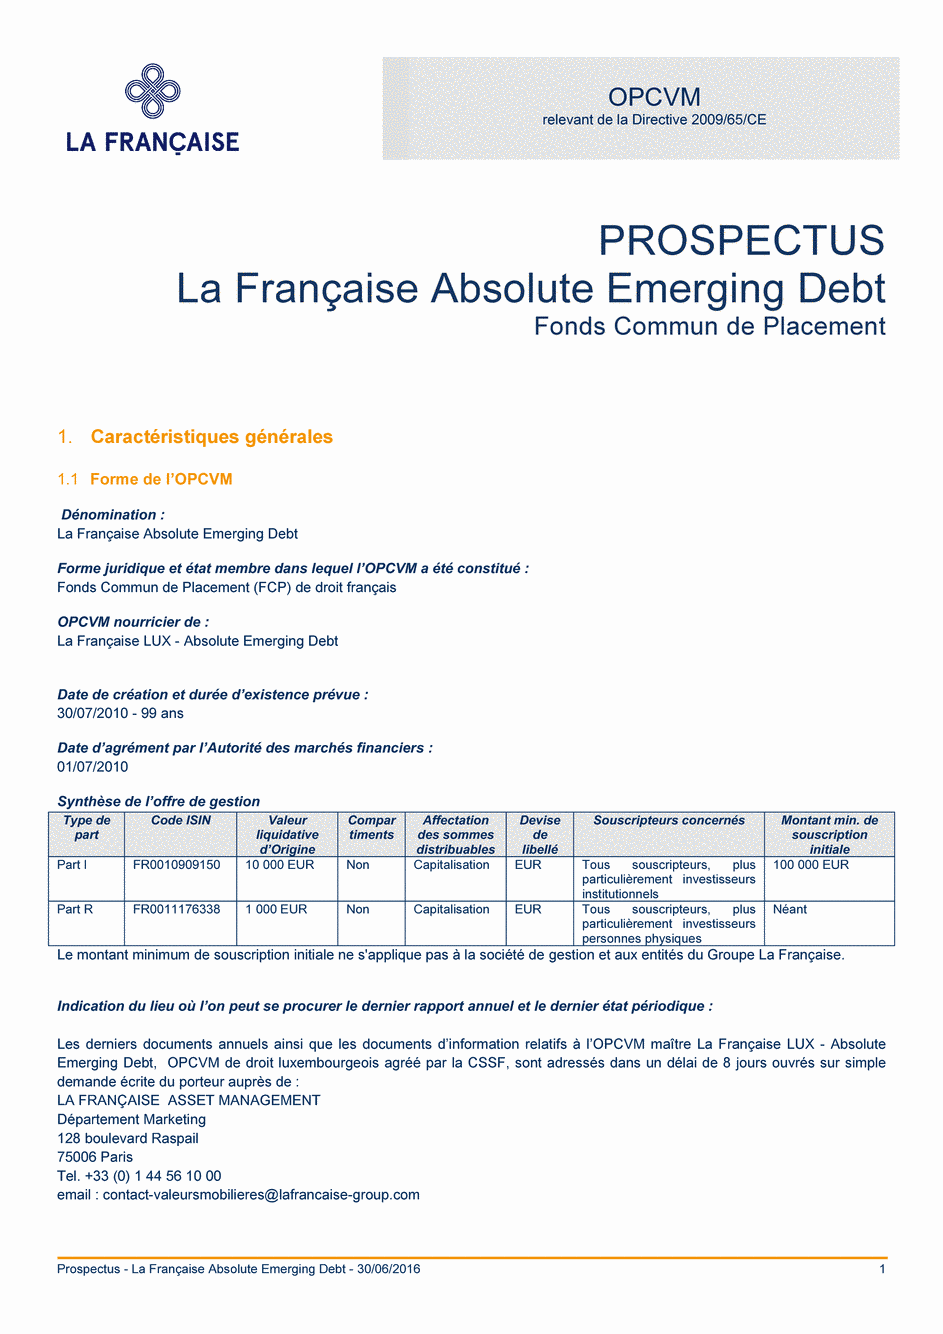 Prospectus La Française Absolute Emerging Debt - Part I - 30/06/2016 - Français